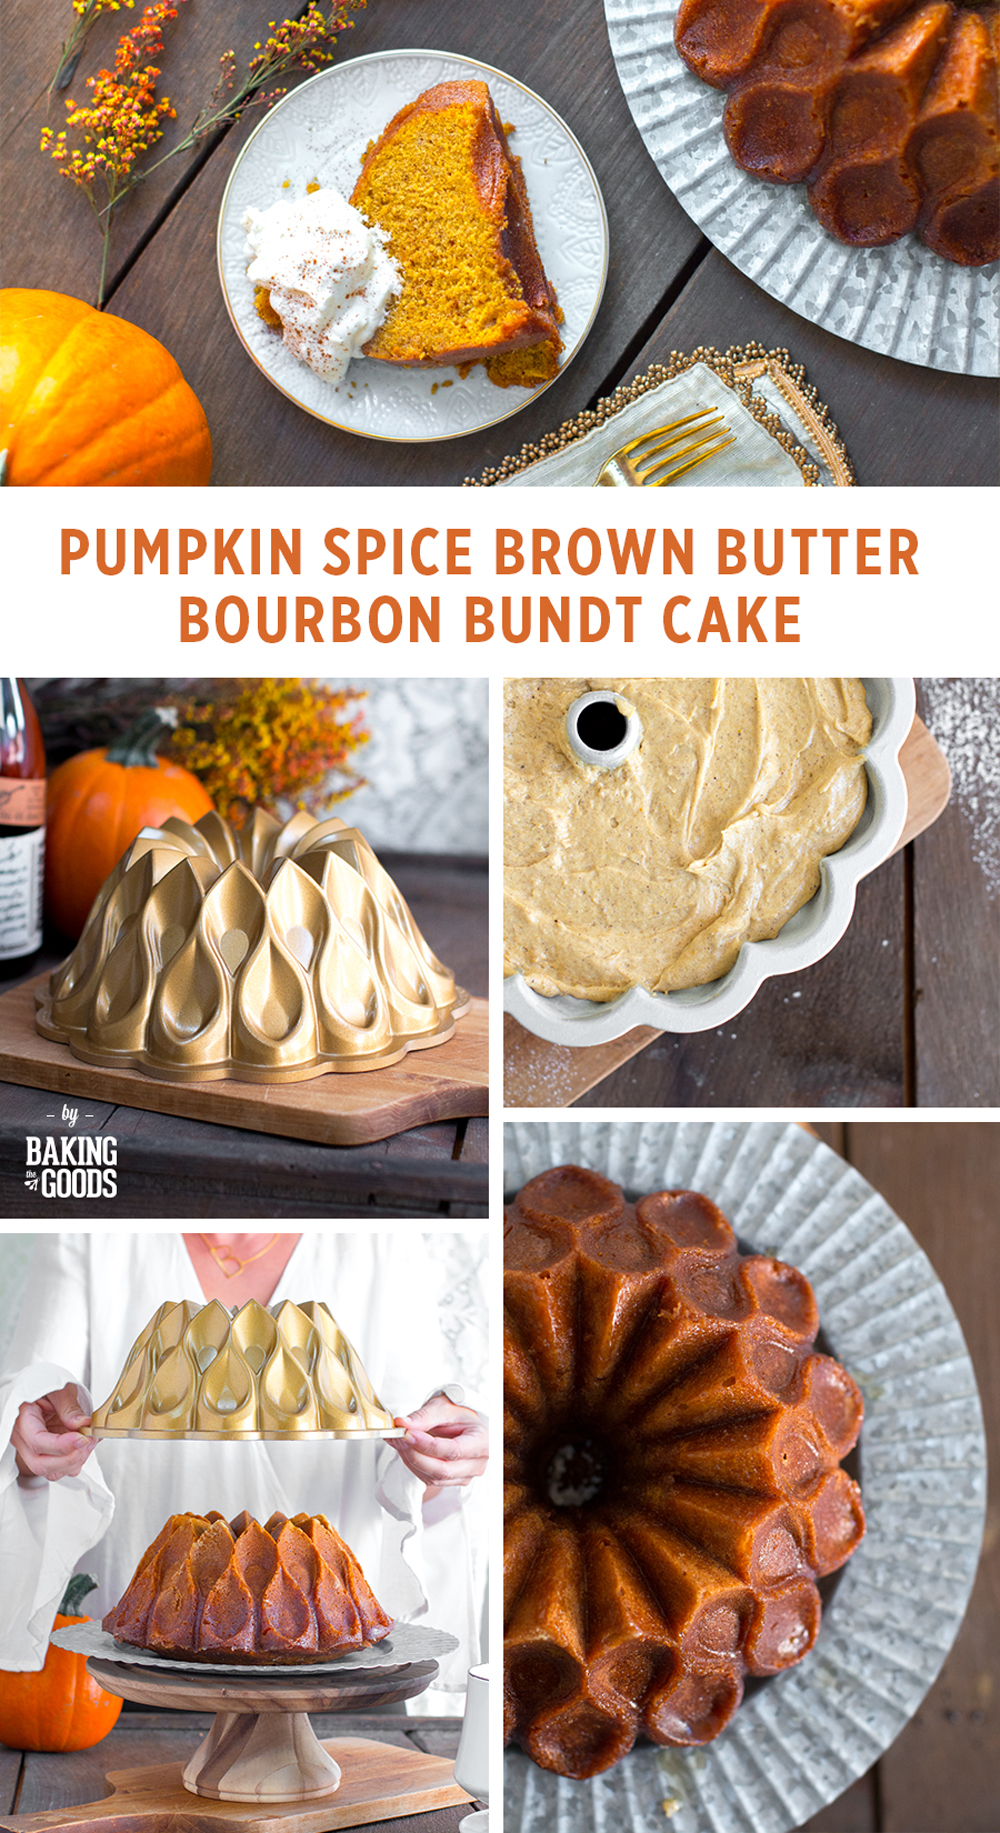 Pumpkin Spice Brown Butter Bourbon Bundt Cake by Baking The Goods